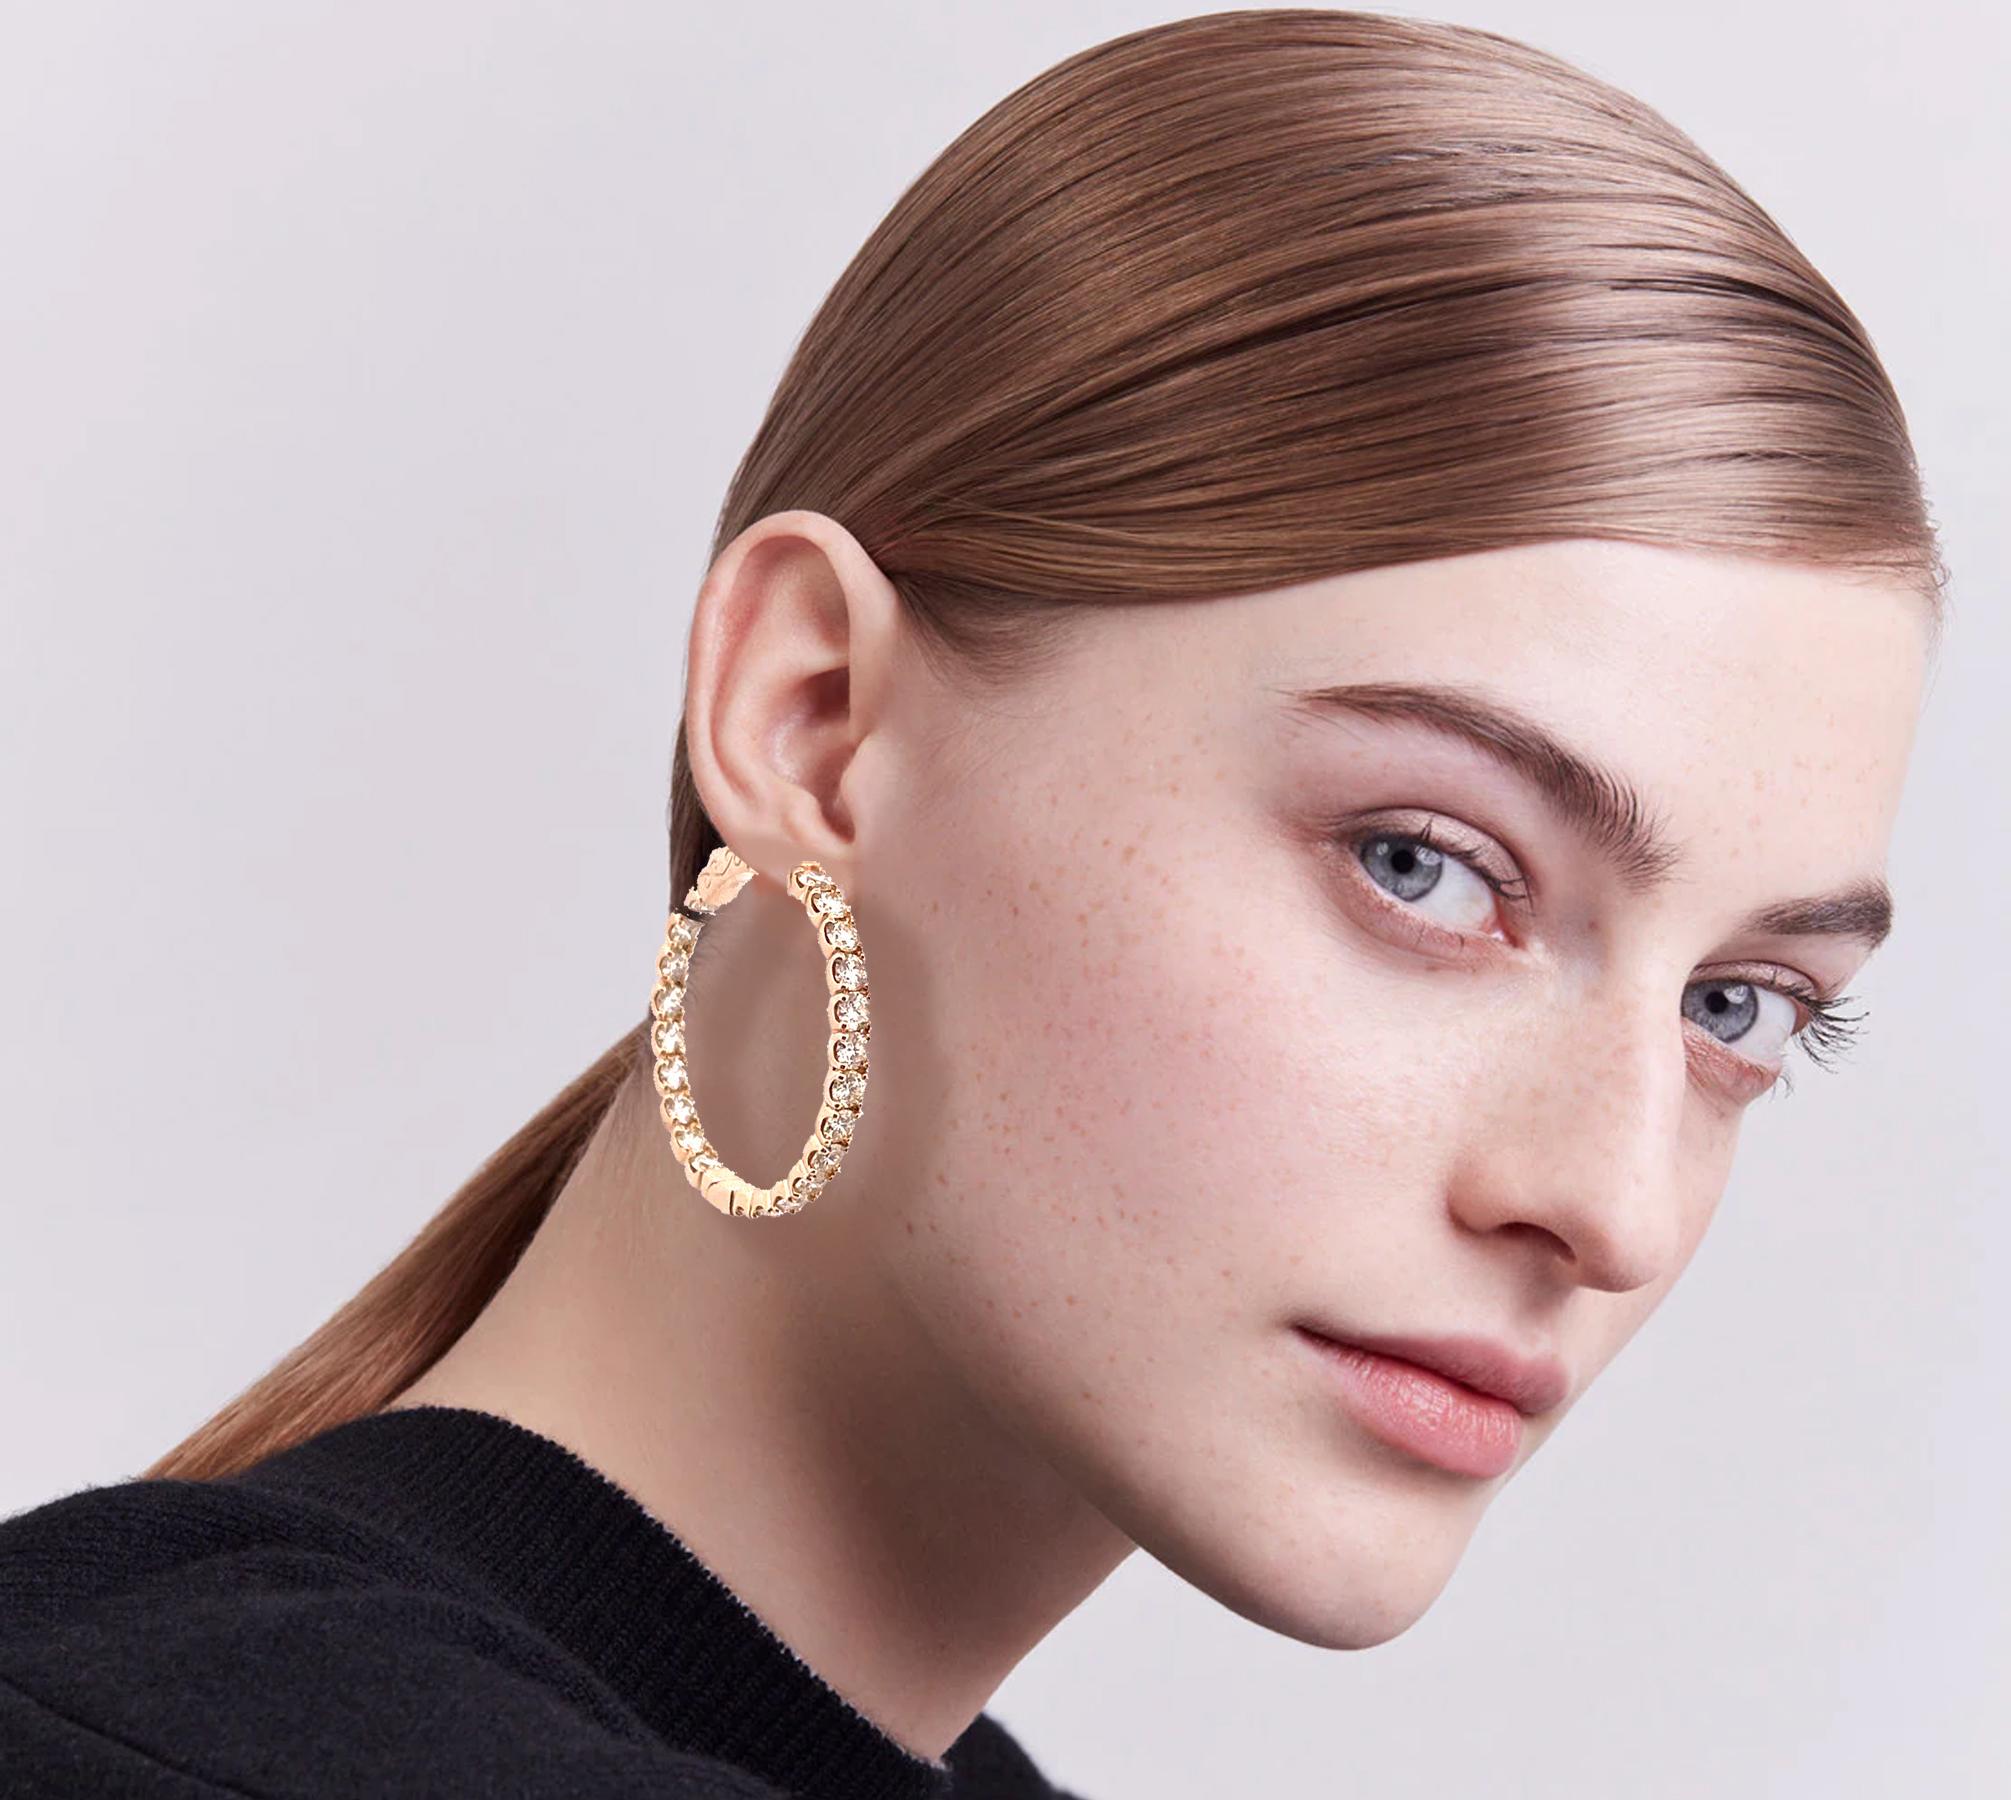 Women's Luxurious 14k Yellow Gold Hoop Diamond Earrings For Sale